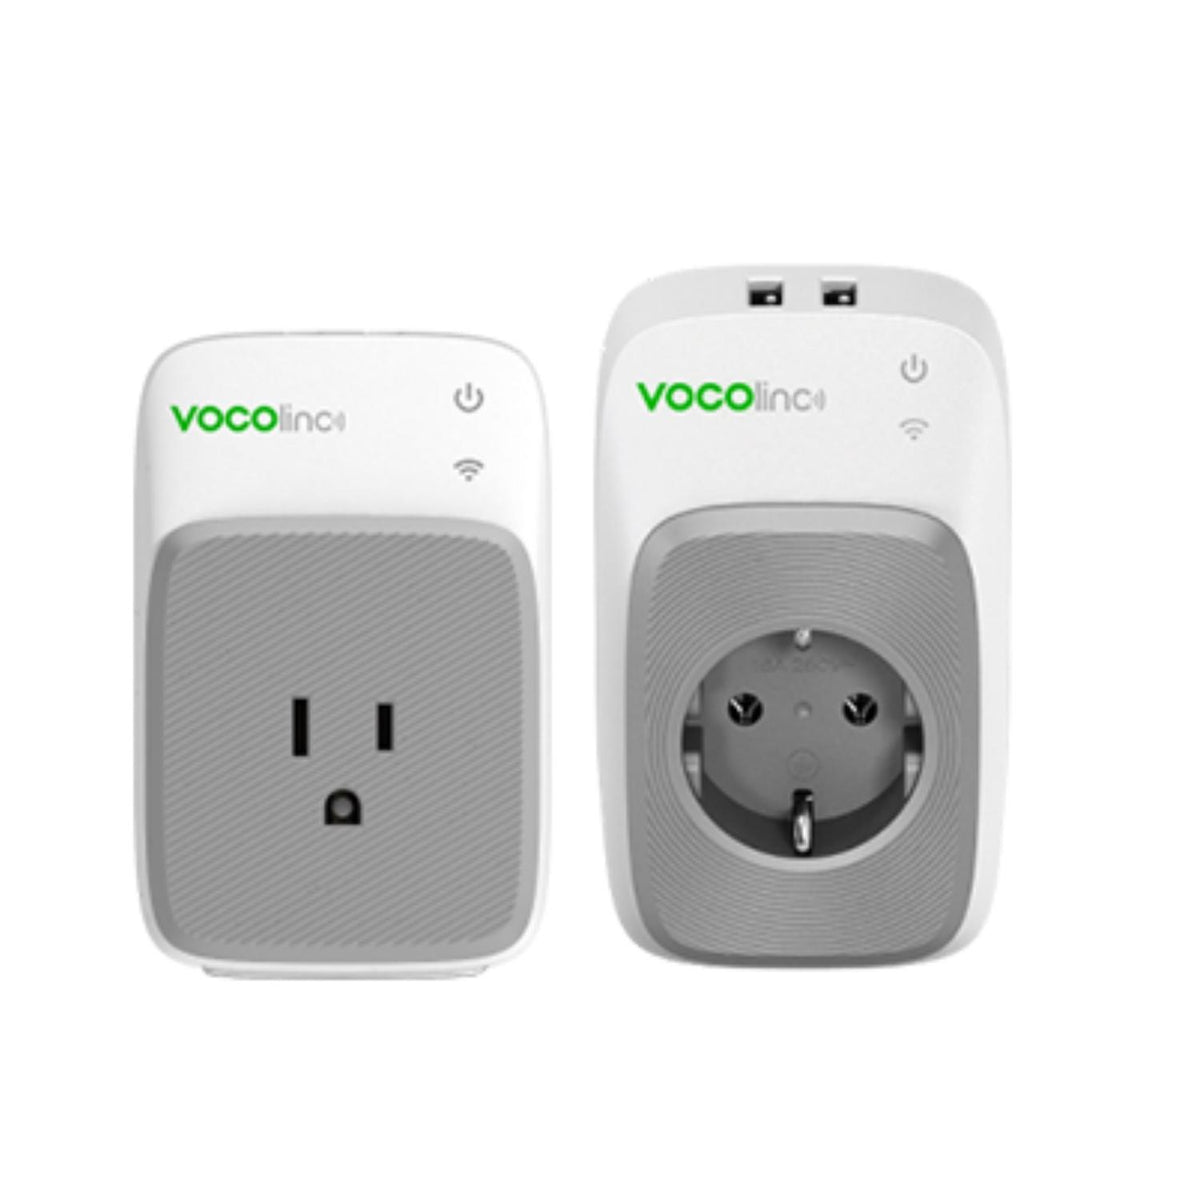 VOCOlinc Toma Corriente Inteligente Toma Corriente Inteligente PM3 con Luz Nocturna y 2 Puertos USB Wi-Fi - vertikal